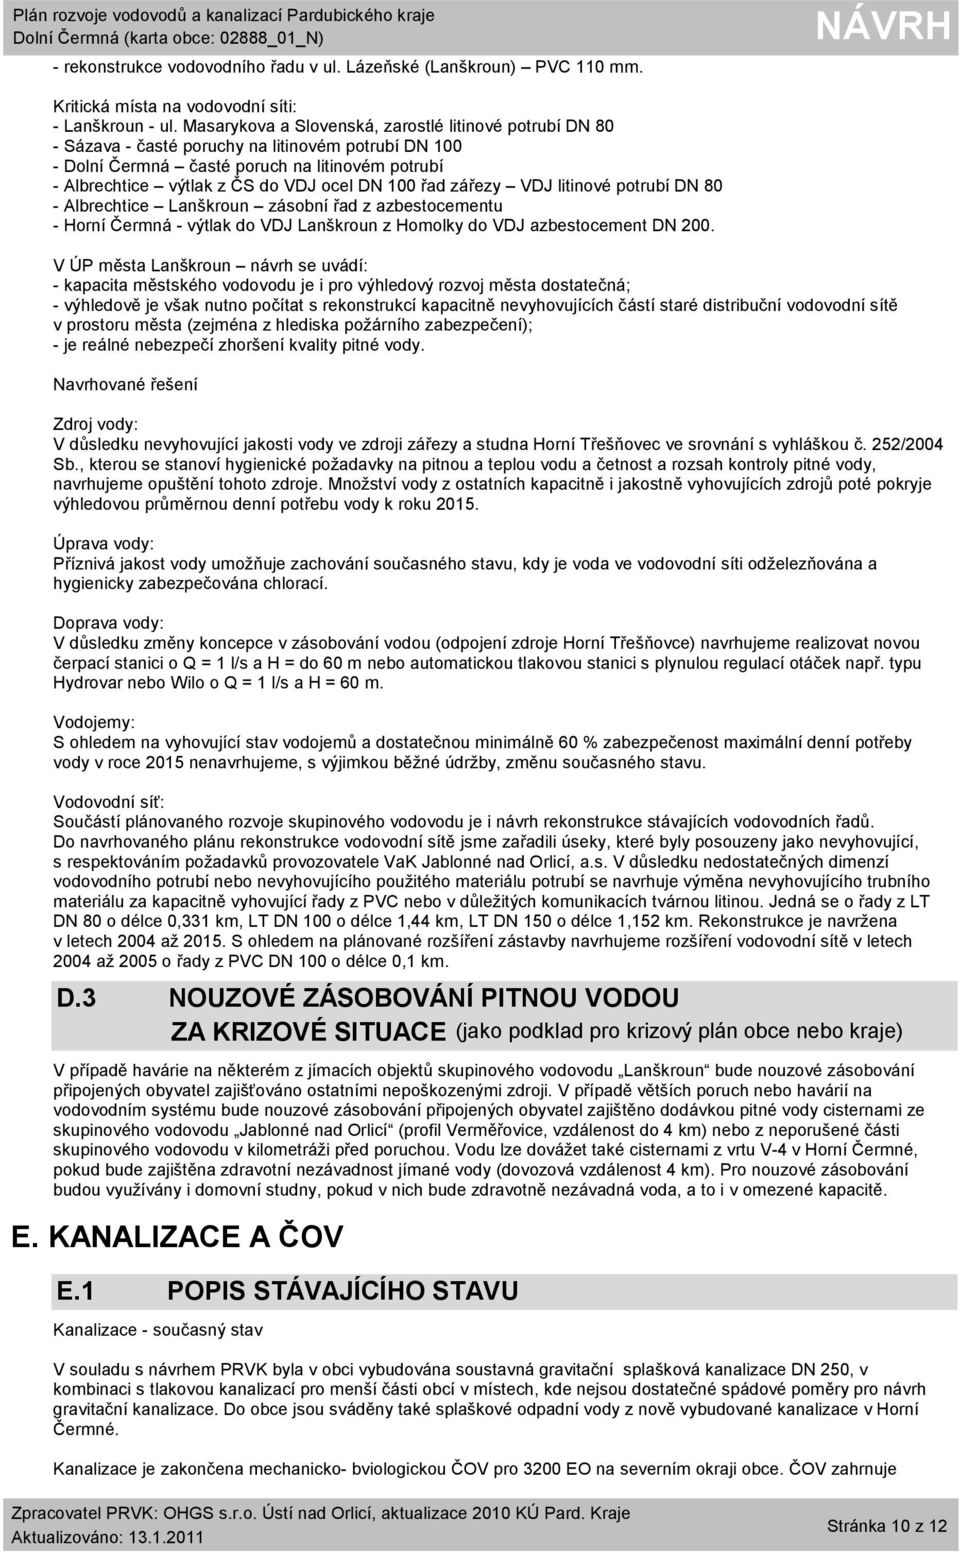 100 řad zářezy VDJ litinové potrubí DN 80 - Albrechtice Lanškroun zásobní řad z azbestocementu - Horní Čermná - výtlak do VDJ Lanškroun z Homolky do VDJ azbestocement DN 200.